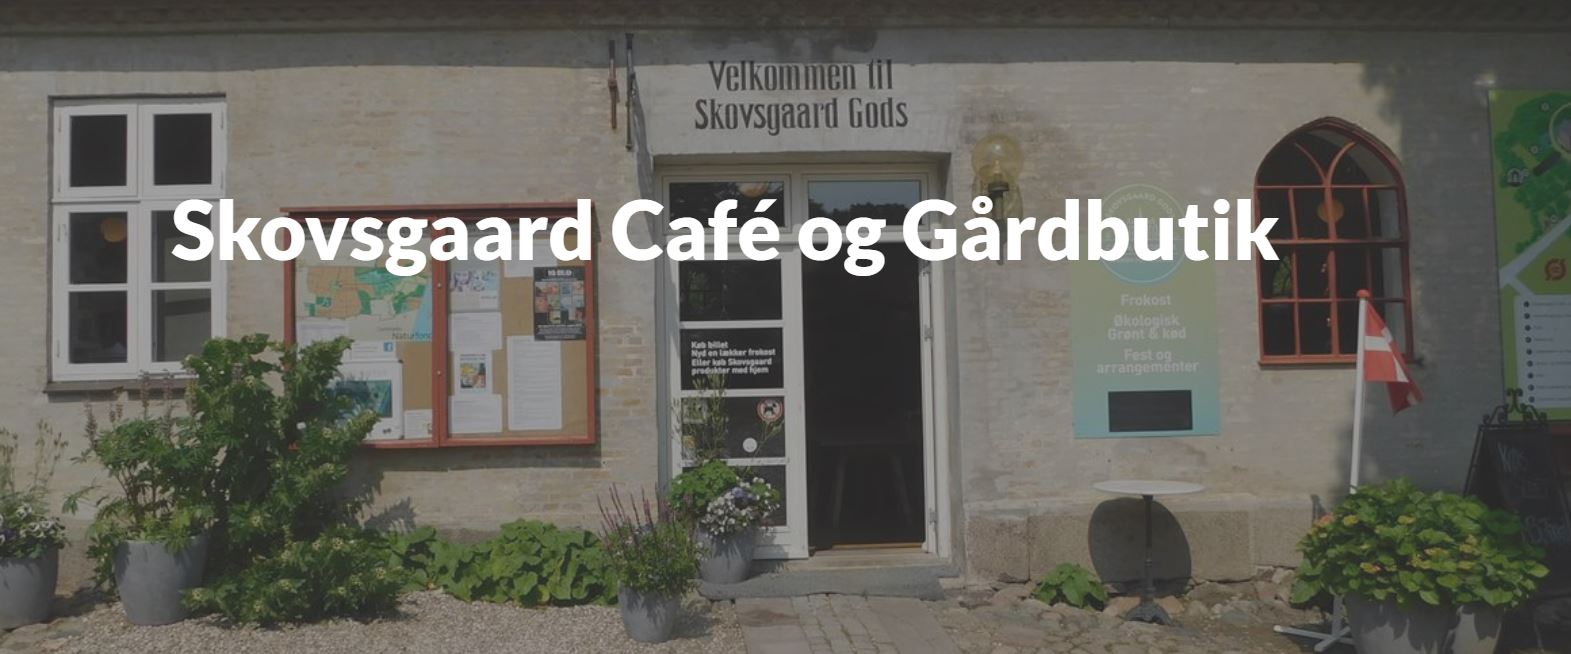 Skovsgaard Cafe